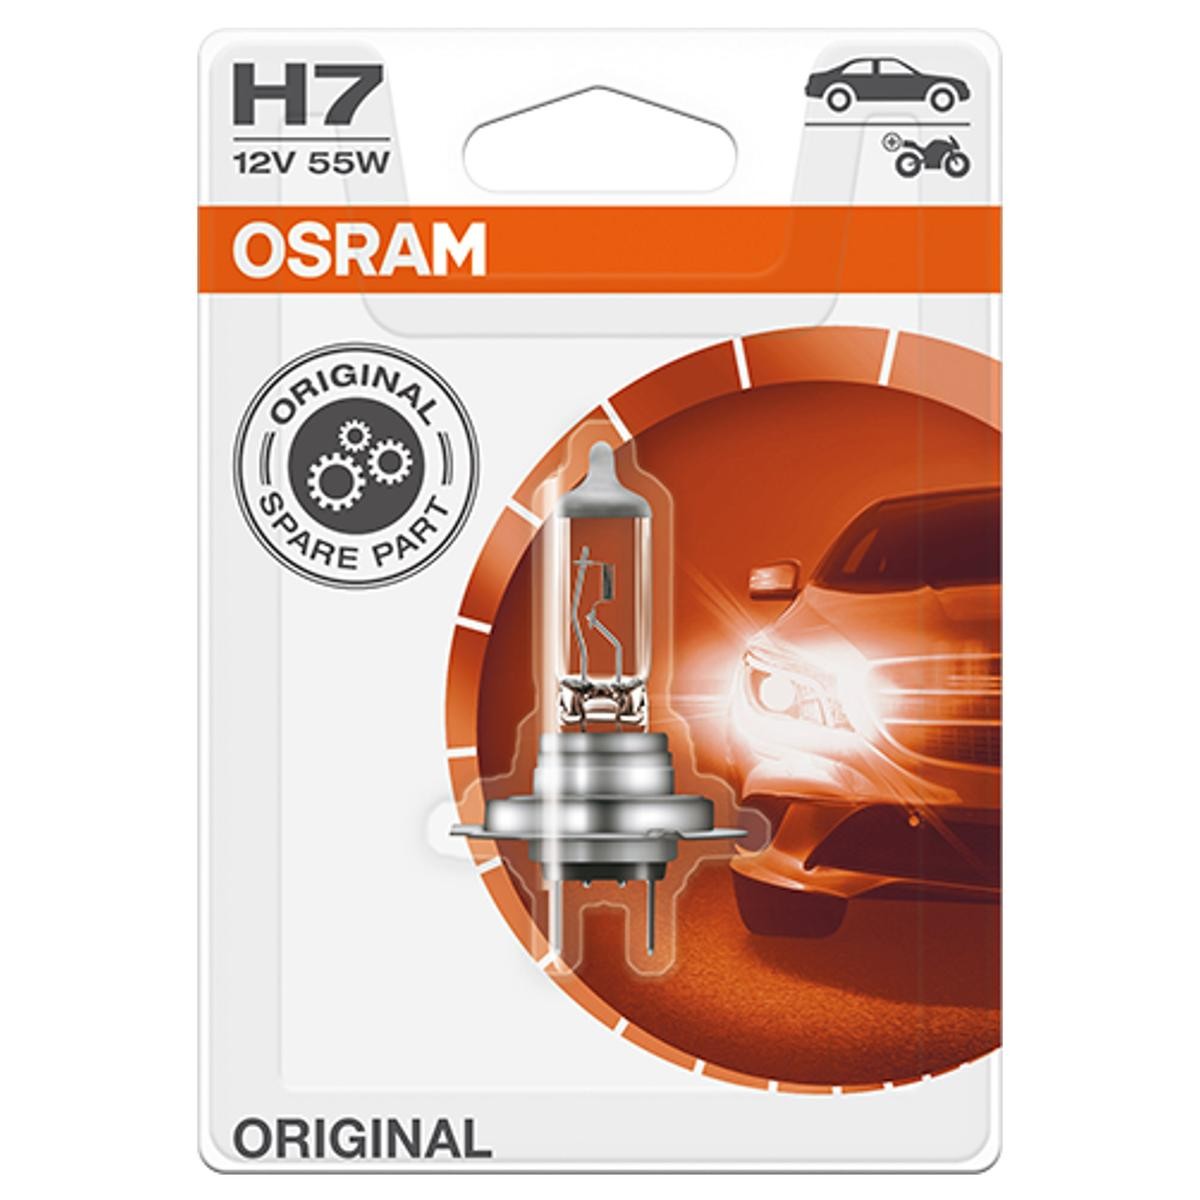 H7 OSRAM 64210-01B Glühlampe für Fernscheinwerfer H7 12V 55W 3200K Halogen Ford in Original Qualität